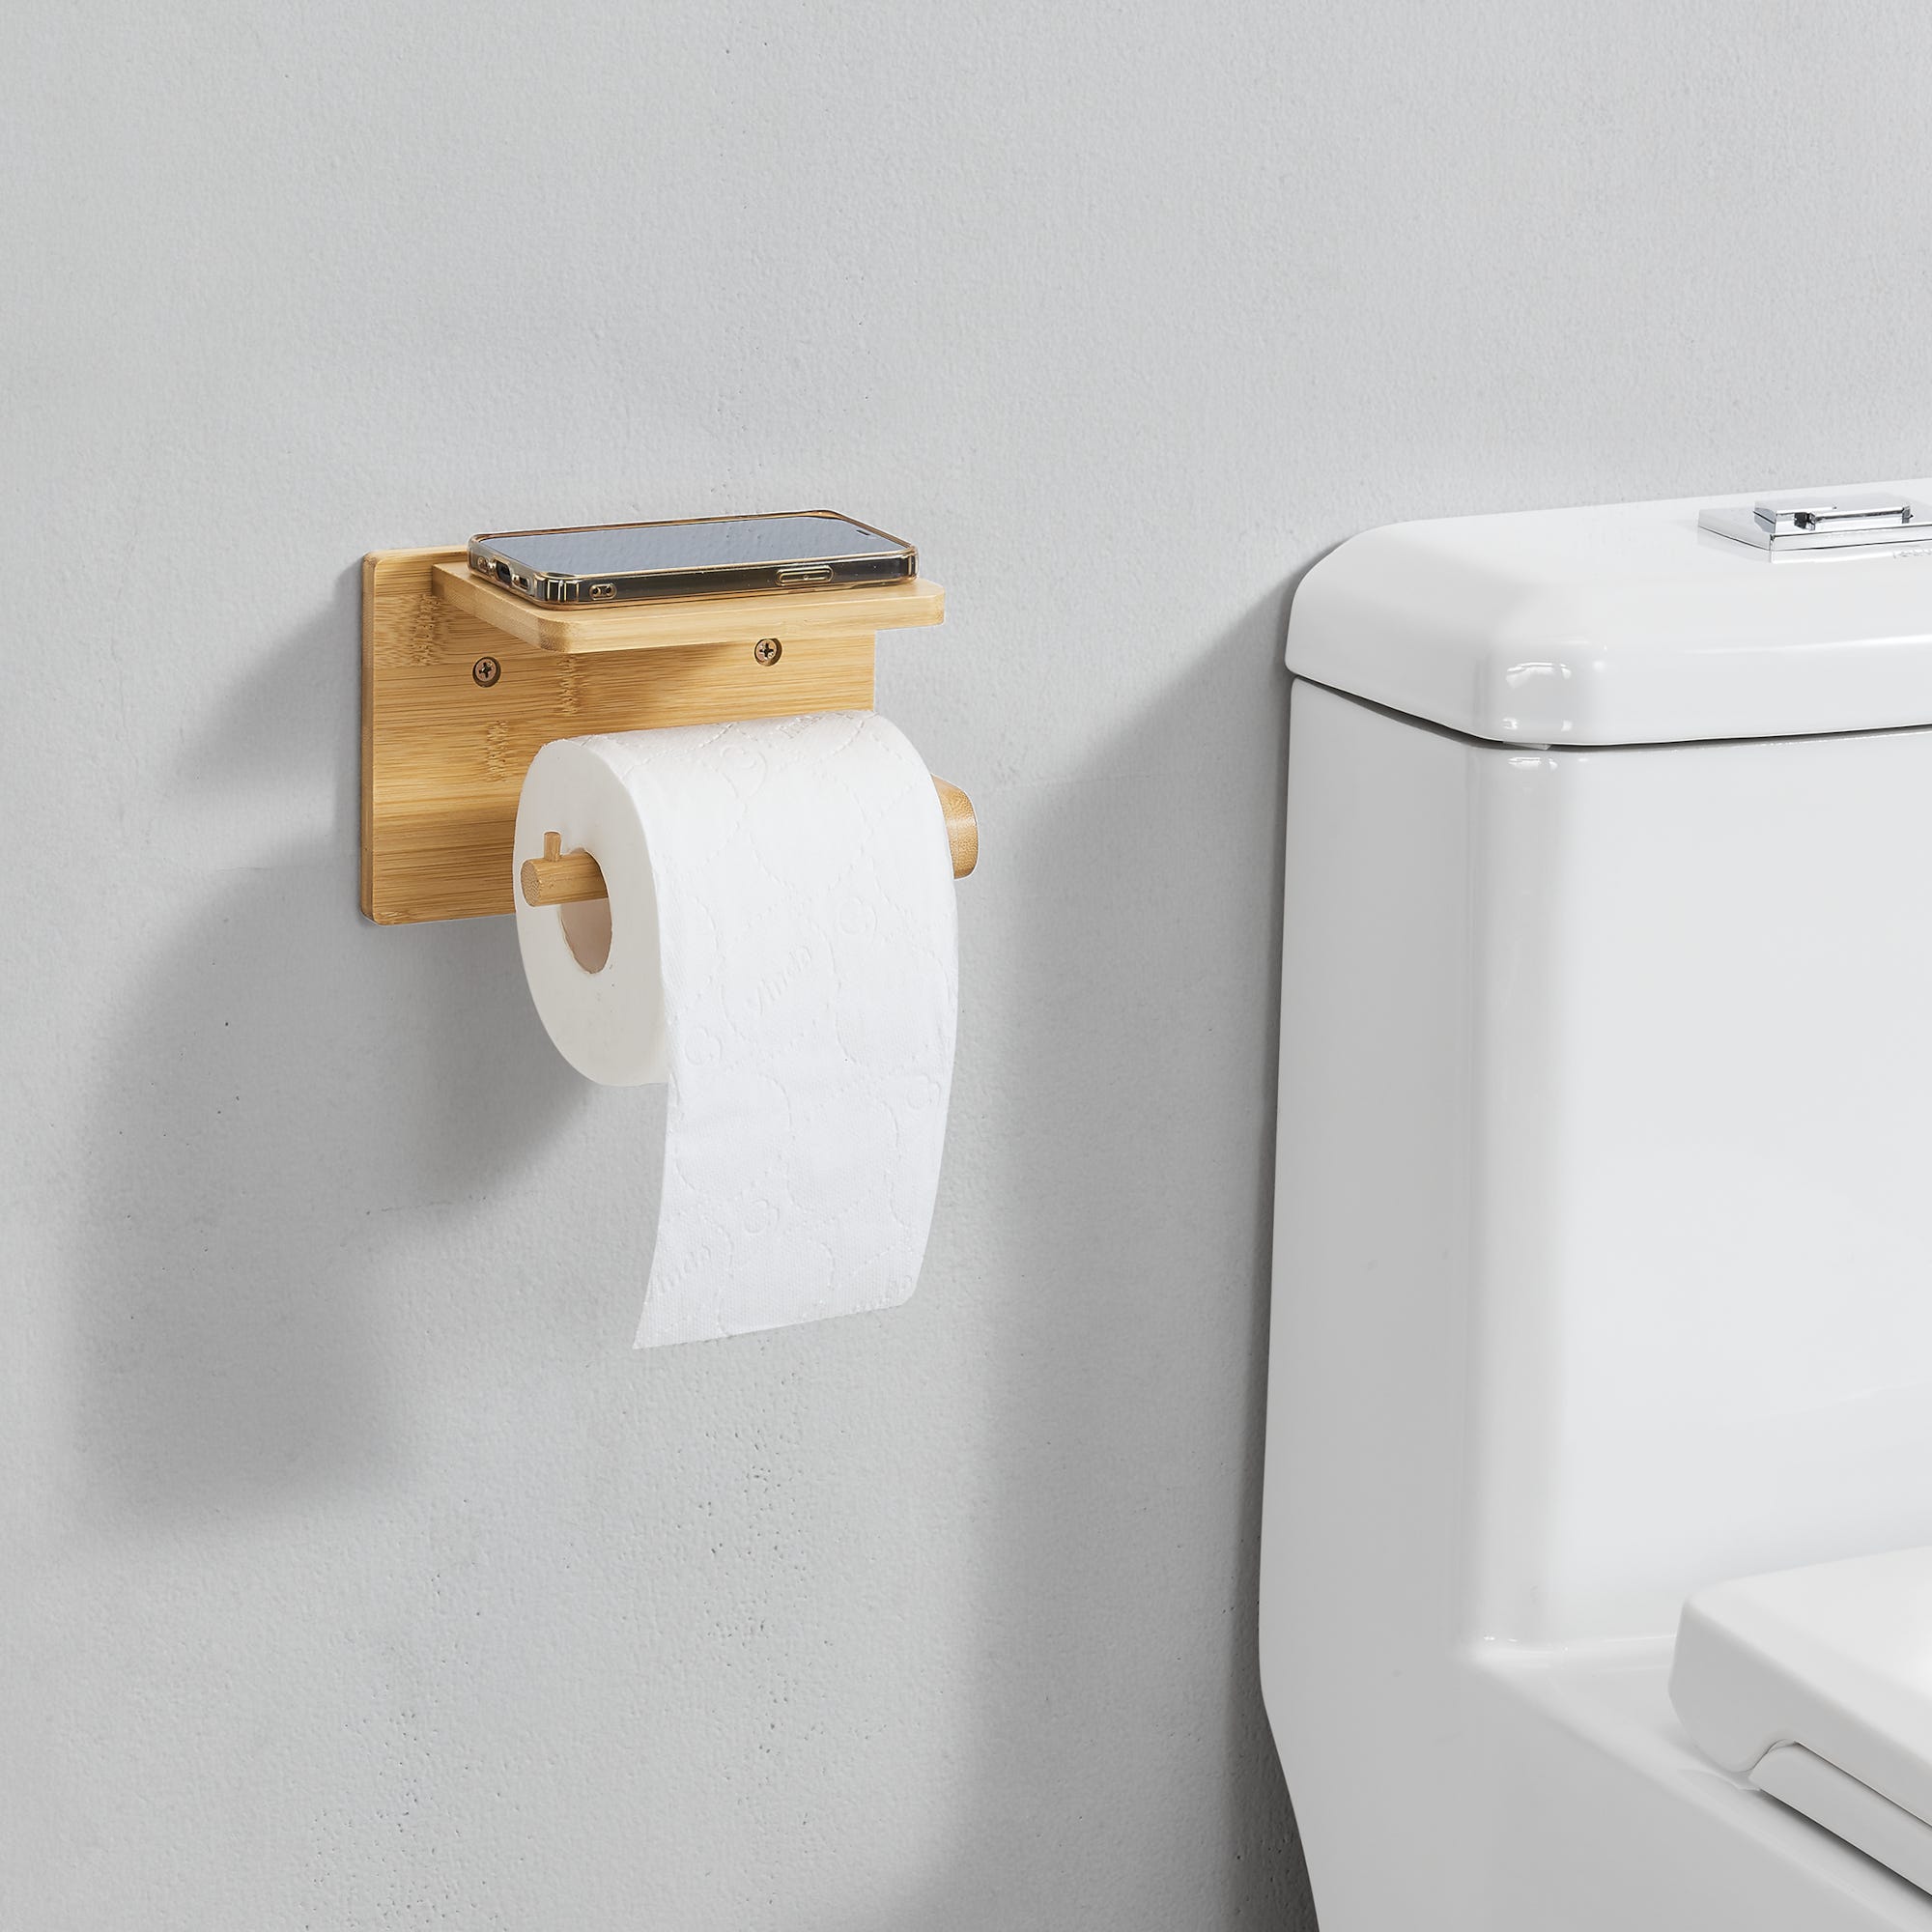 Porte-papier toilette avec étagère pour lingettes hygiéniques - 2 en 1,  WENKO, WENKO